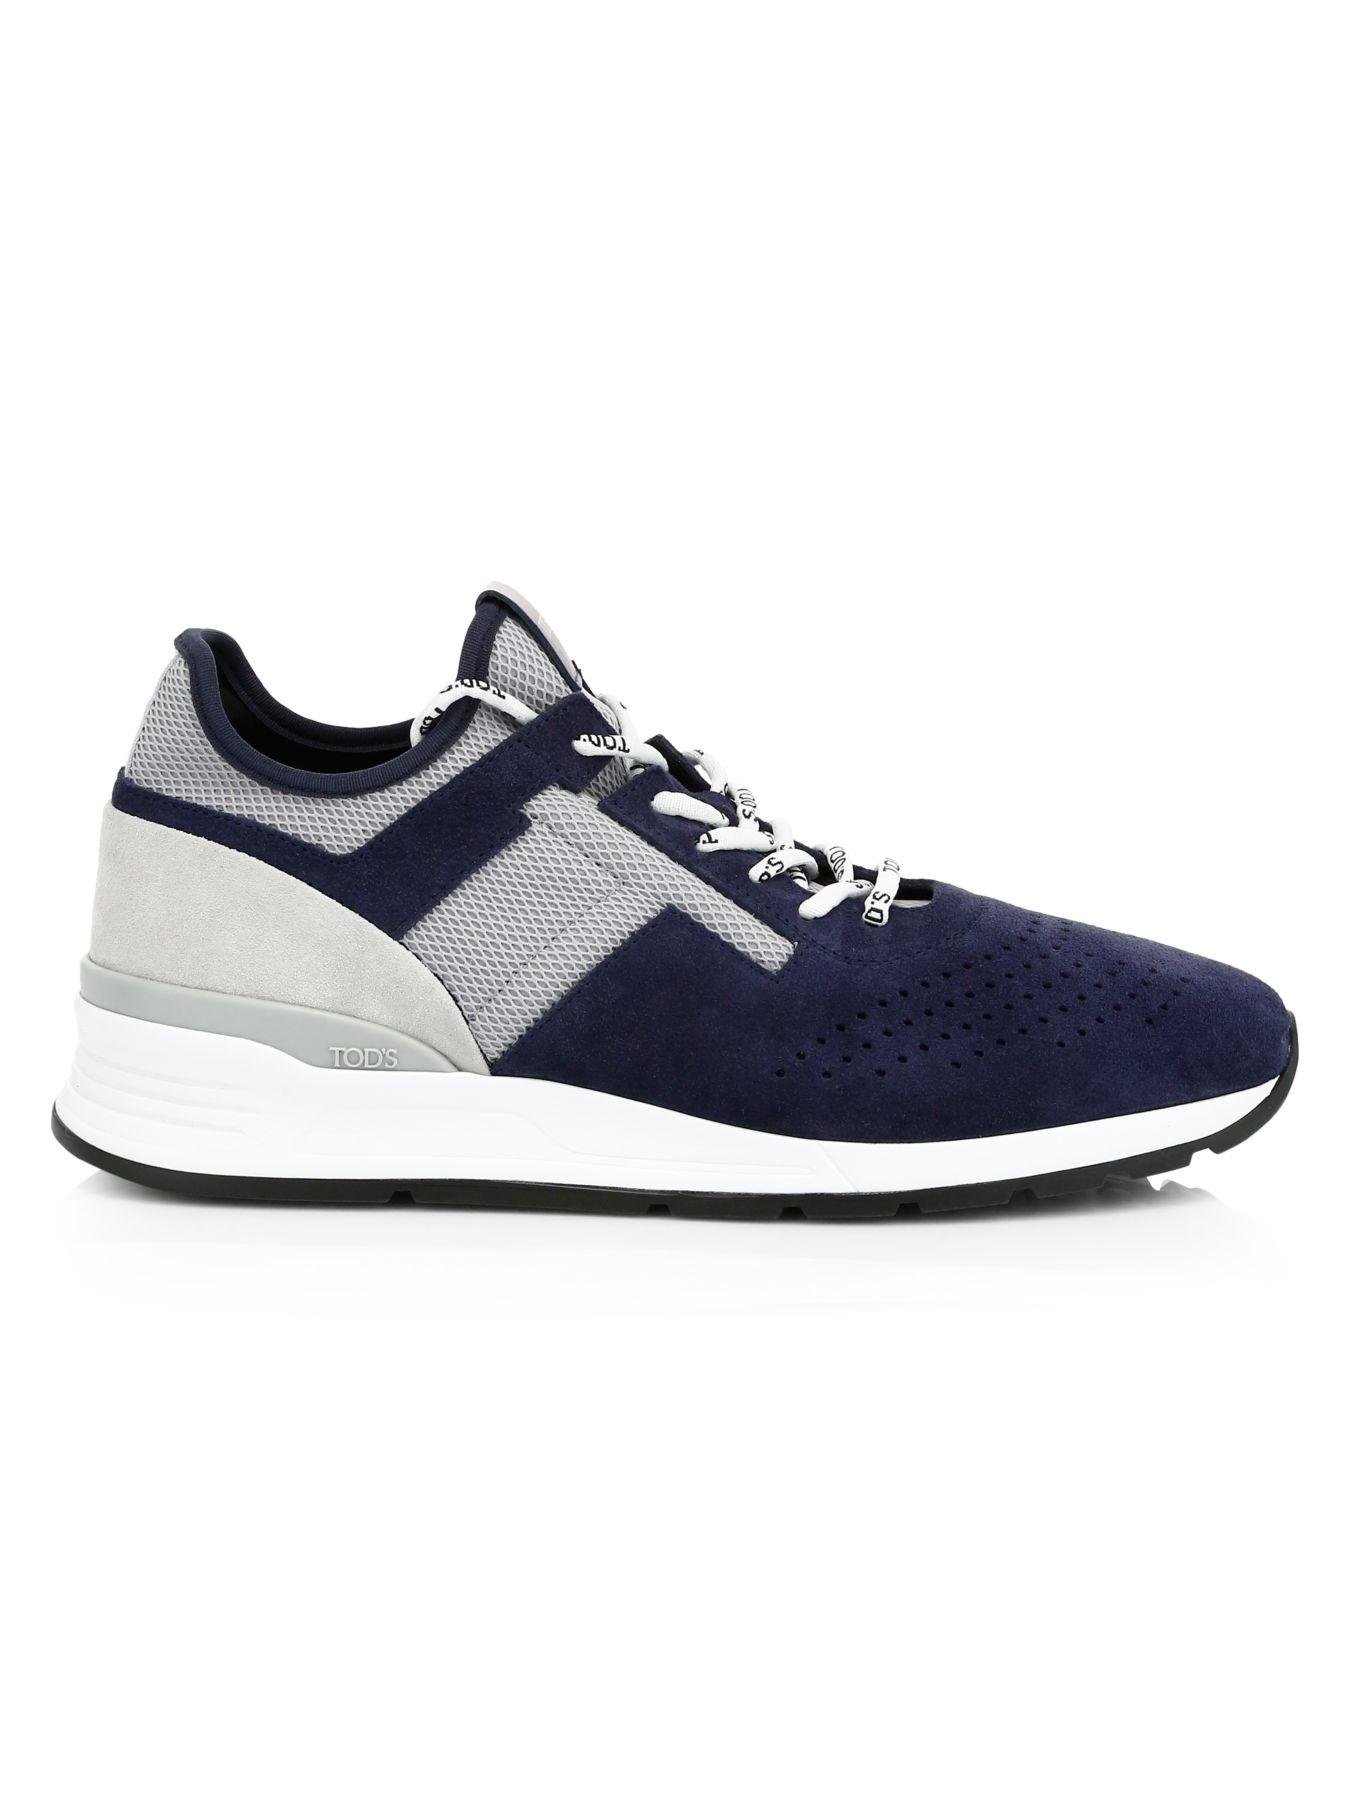 Tod's Sportivo Suede & Neoprene Sneakers in Blue for Men - Lyst